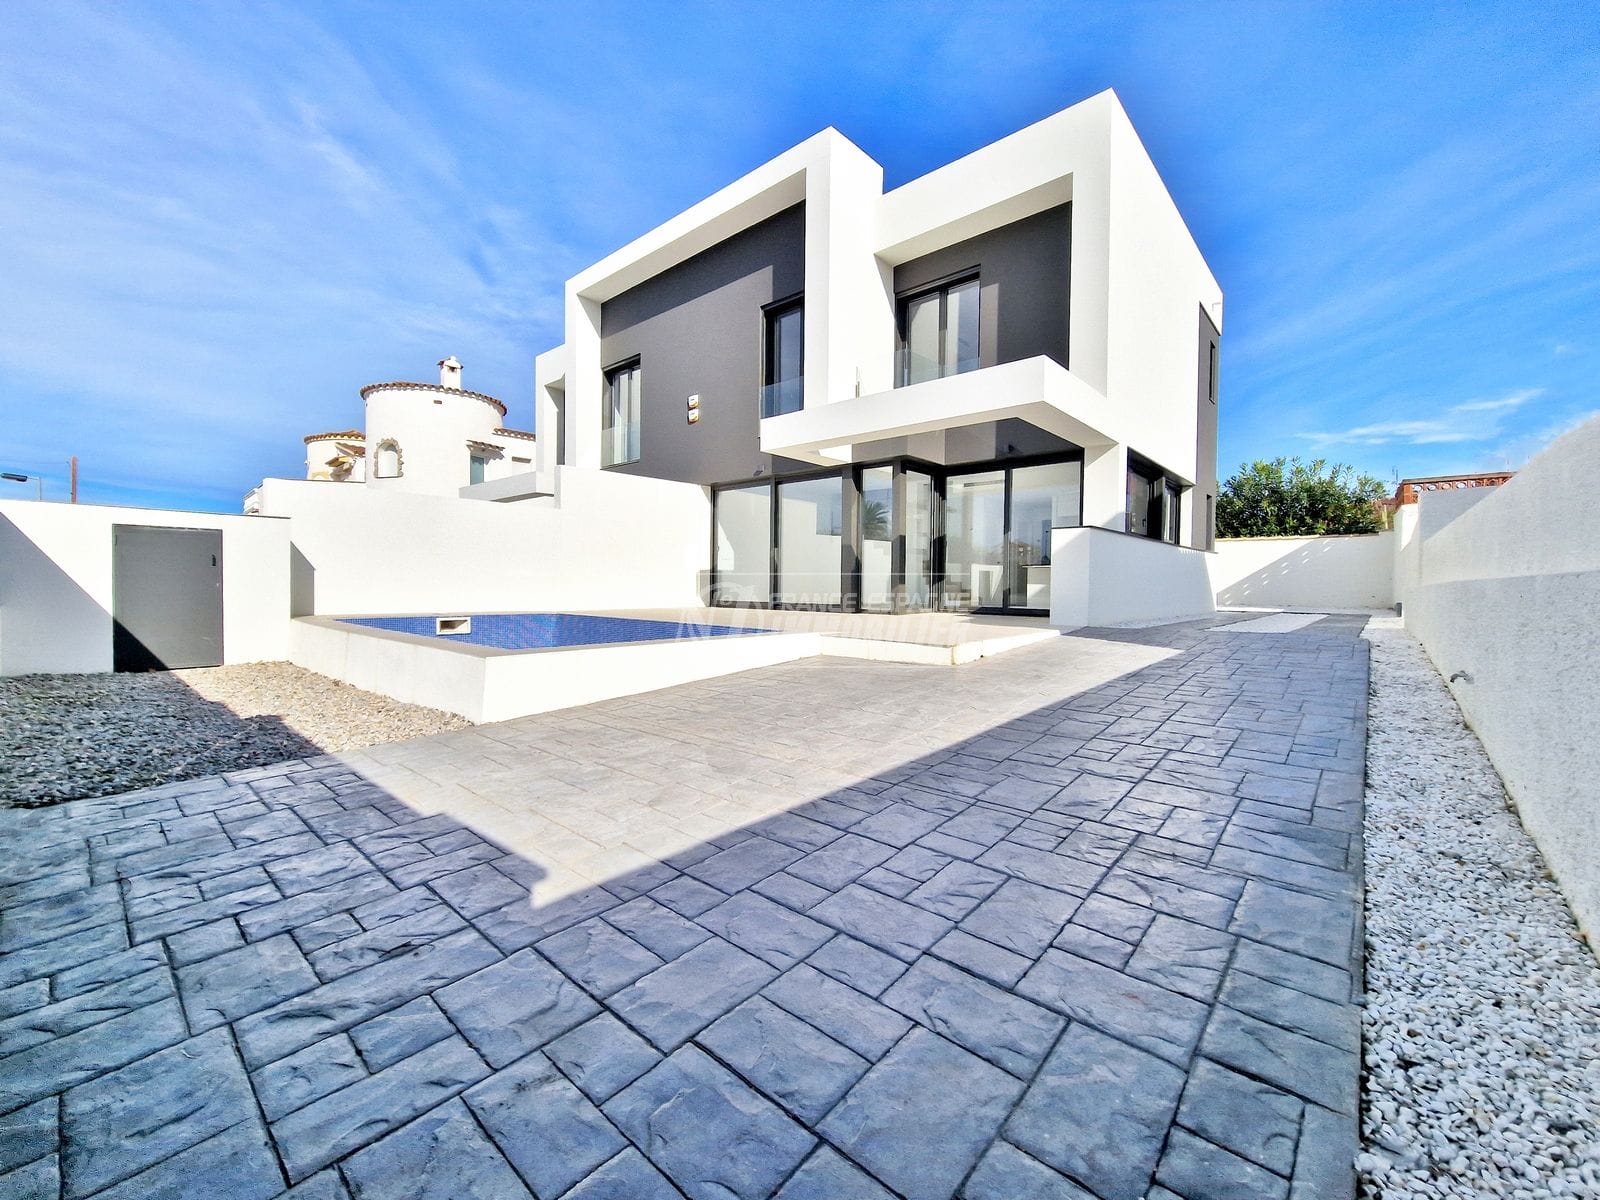 Empuriabrava - Contemporary 4 bedroom villa, pool, beach 600m